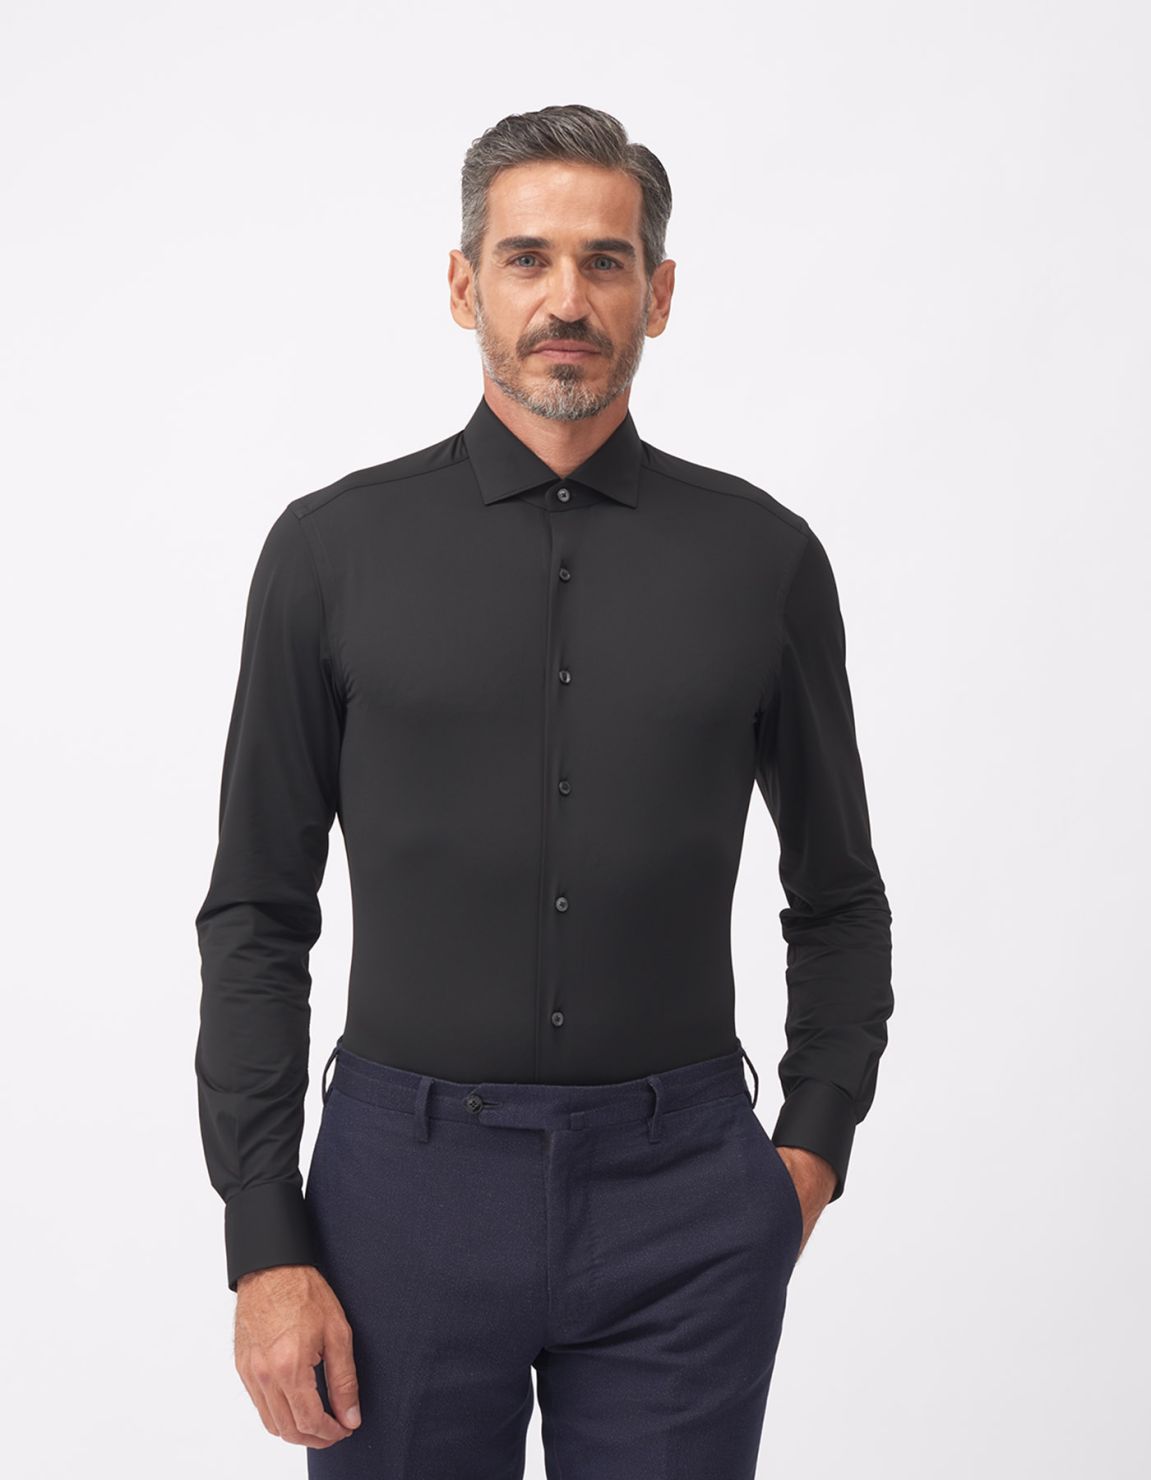 Shirt Collar small cutaway Black Twill Tailor Custom Fit 6